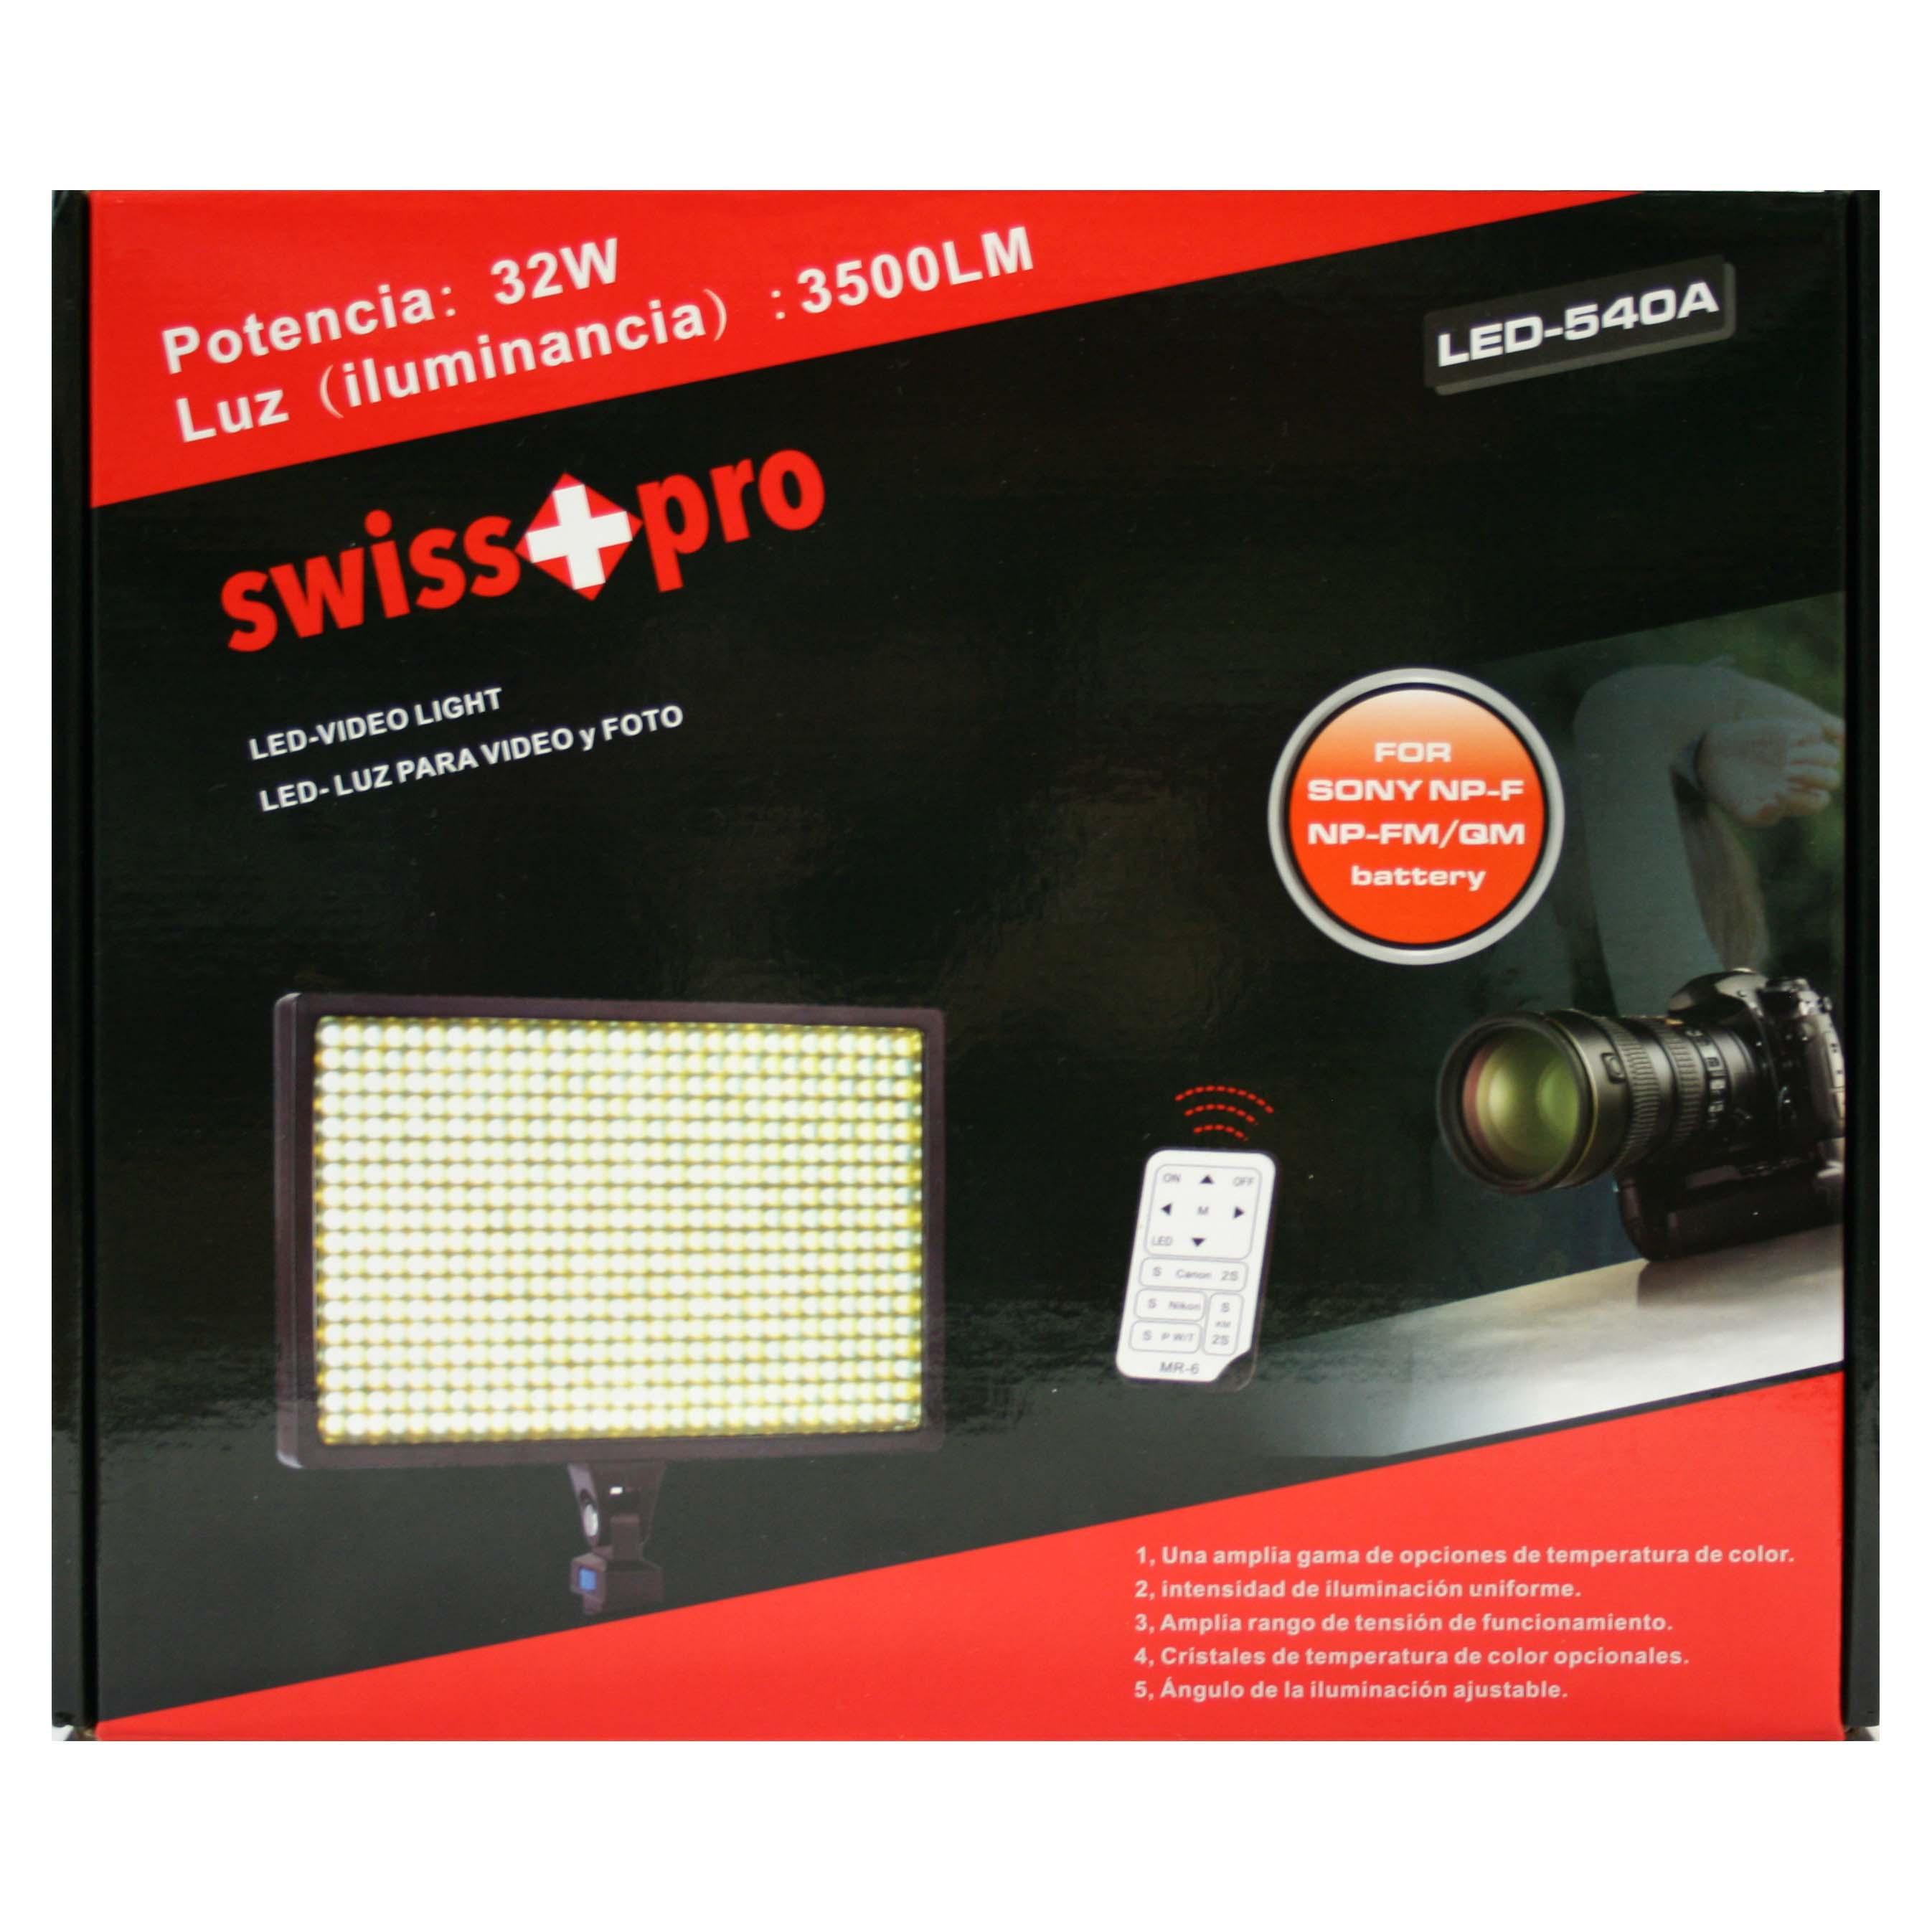 ANTORCHA LED SWISS-PRO IS-L540A 540 LEDS SWISS-PRO 